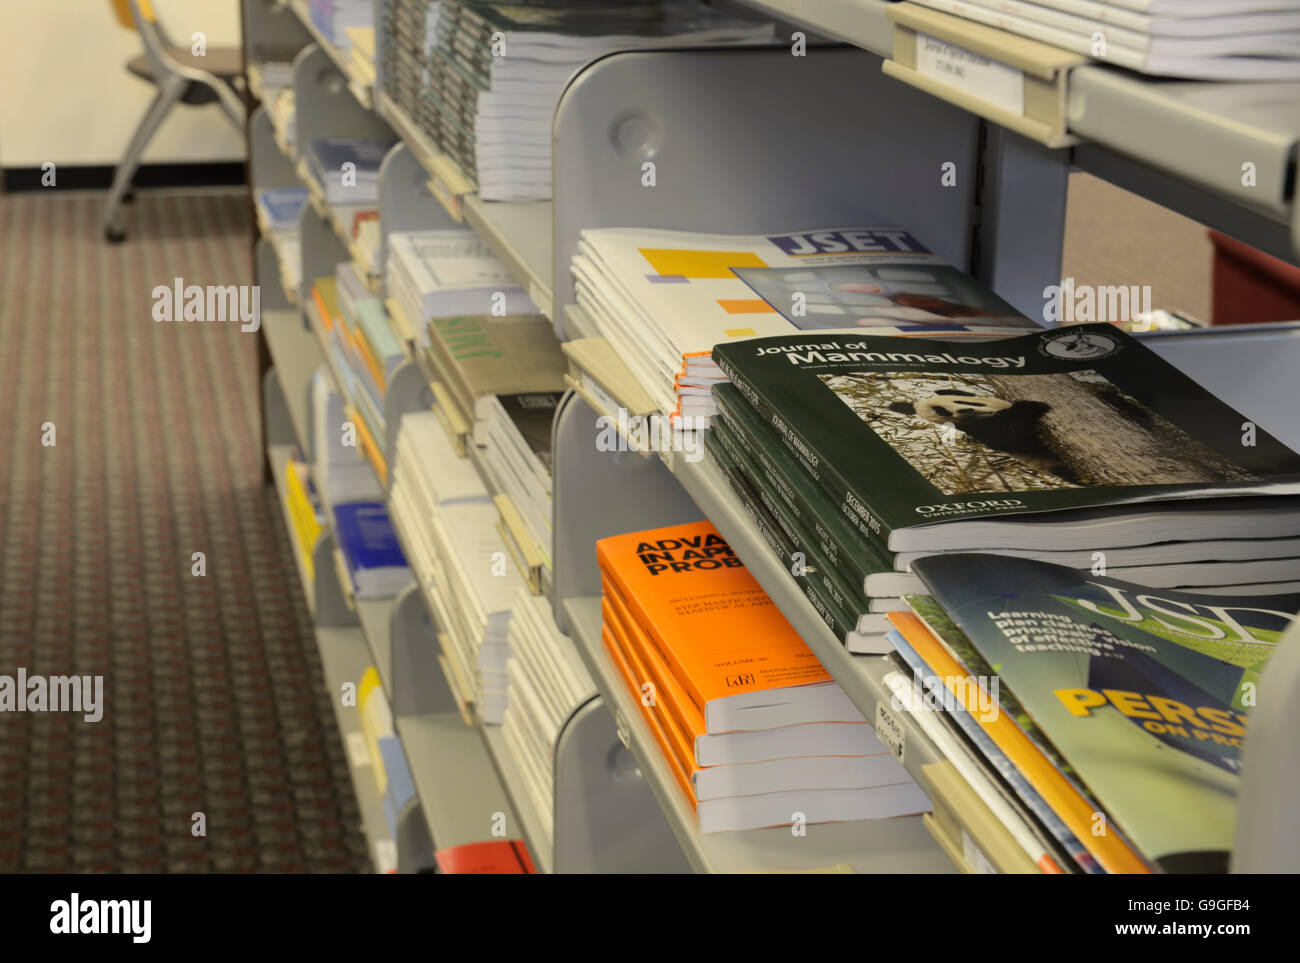 Revistas, publicaciones periódicas en las estanterías, en la biblioteca de la universidad Foto de stock